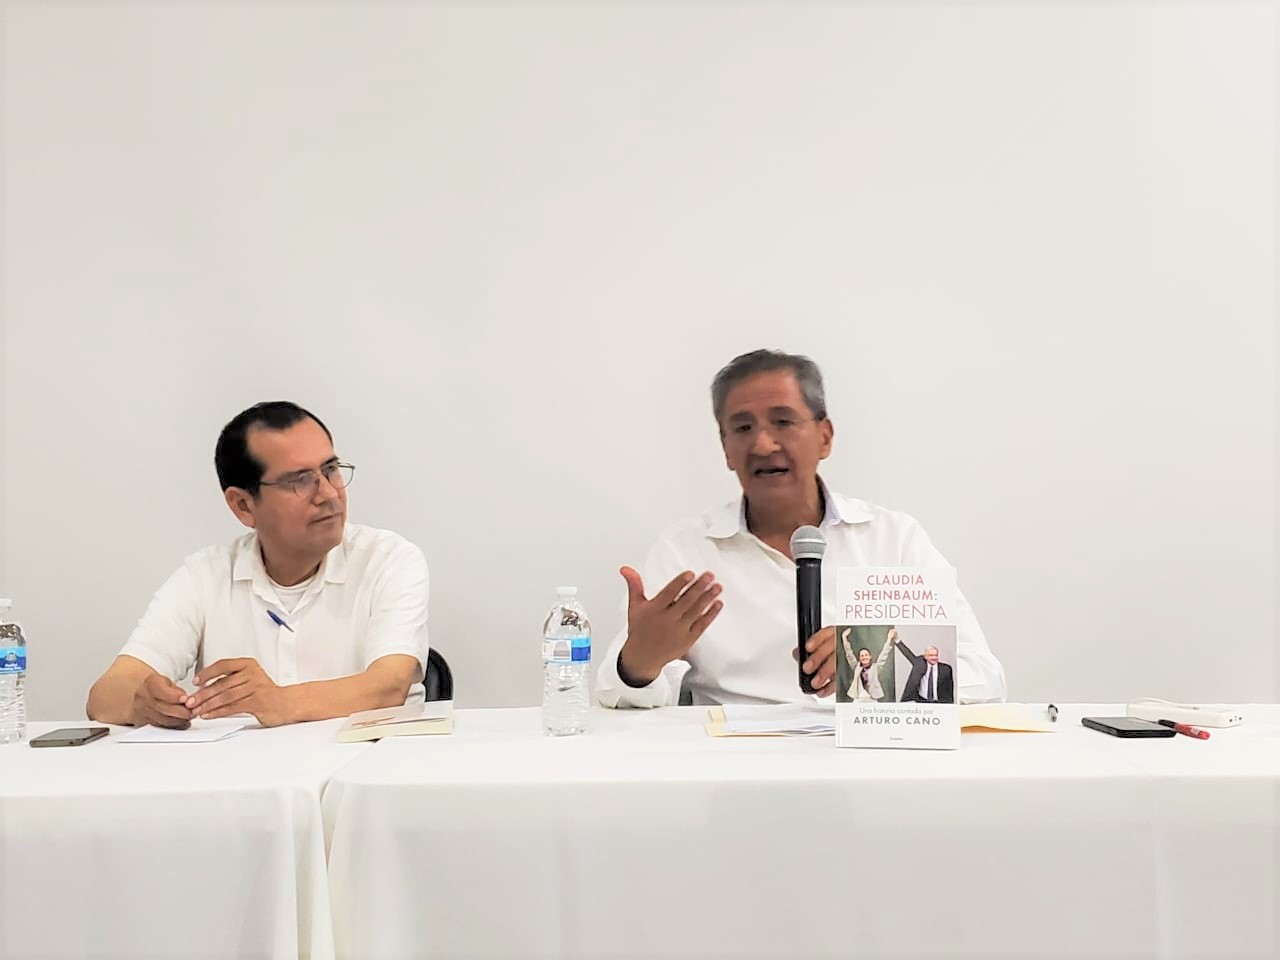 Presentan en Tijuana el libro “Claudia Sheinbaum: Presidenta”, del autor Arturo Cano